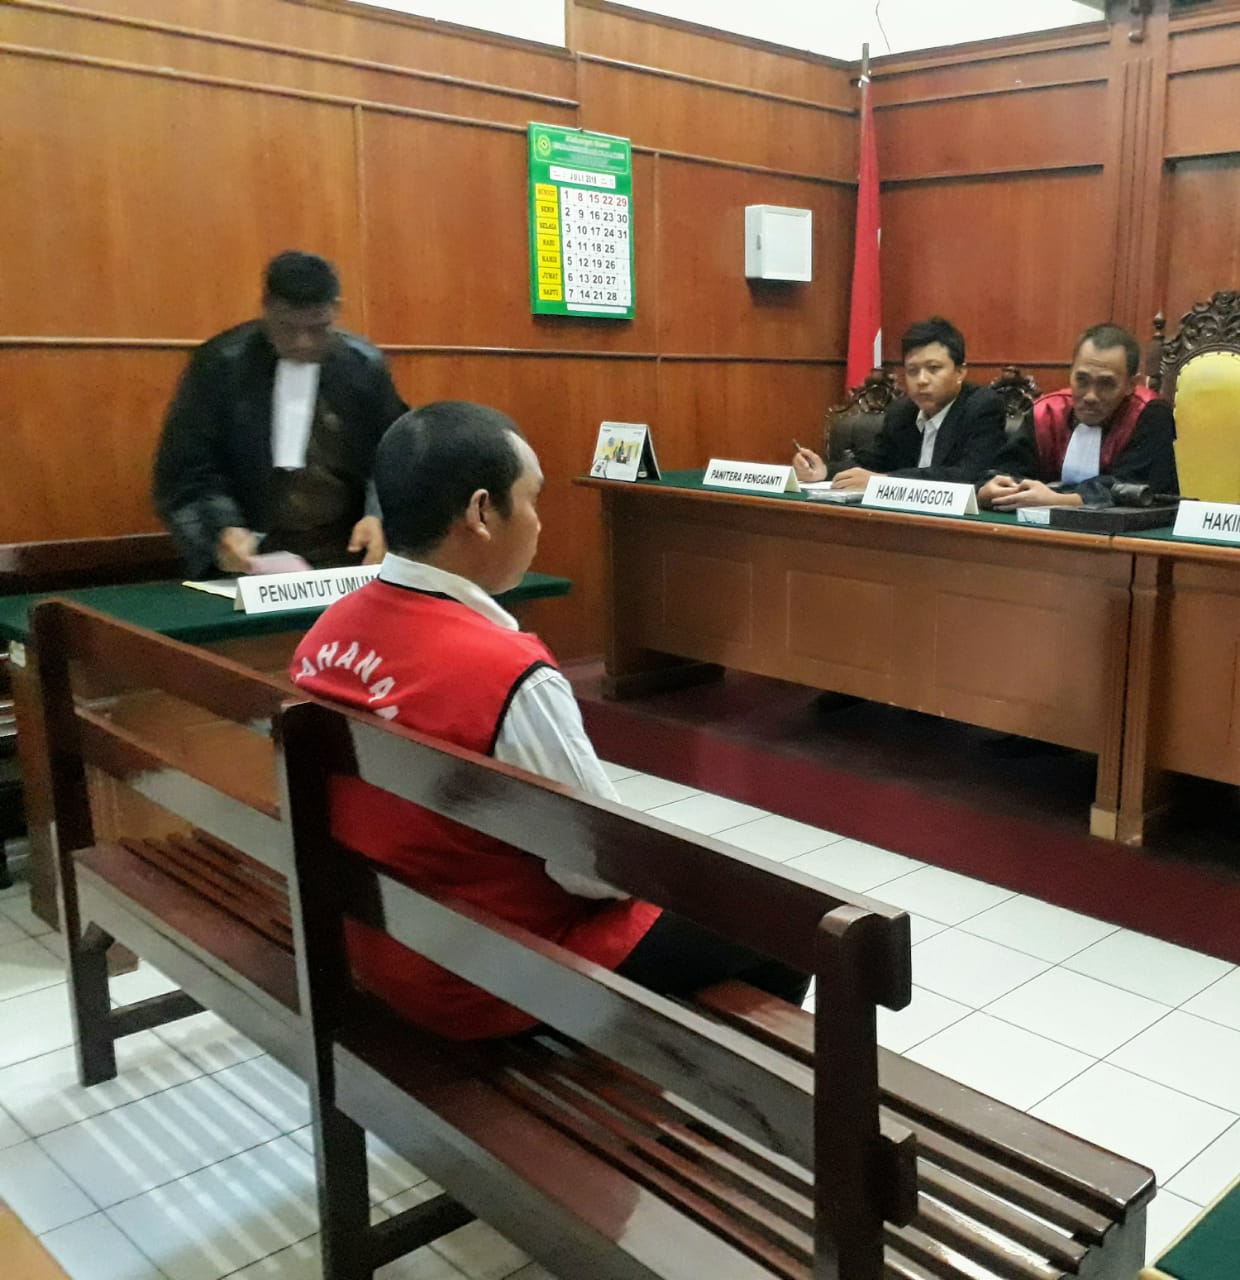 Terdakwa Torang Manaek Manullang menjalani sidang  di Pengadilan Negeri (PN) Surabaya, Selasa 17 Juli 2018